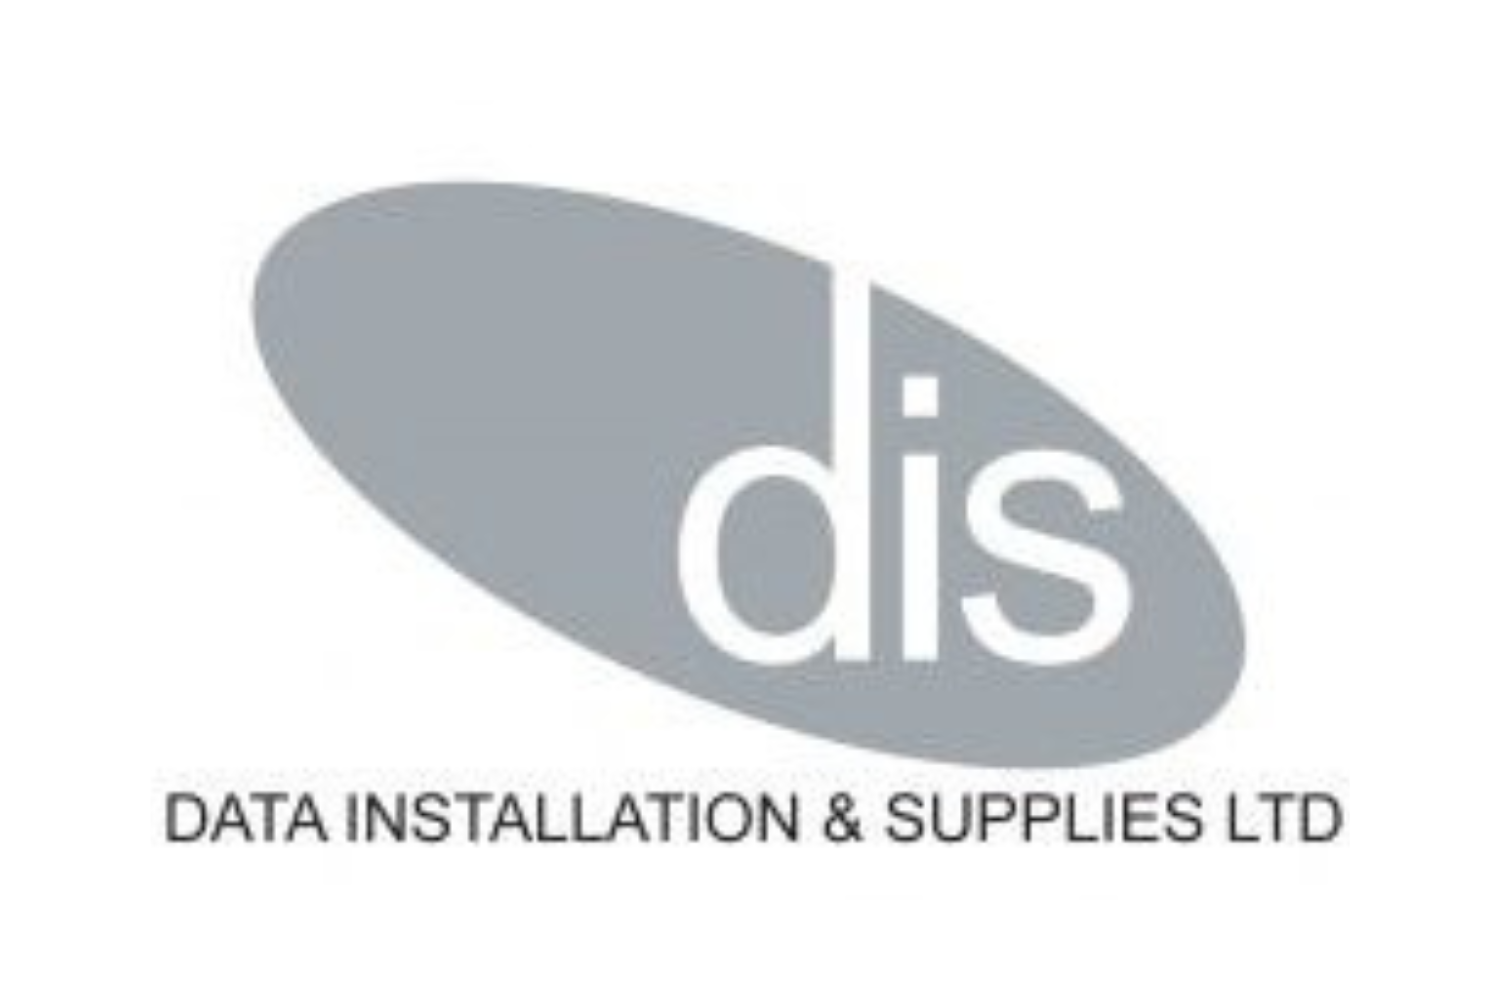 Data Installation & Supplies (Northern) Limited